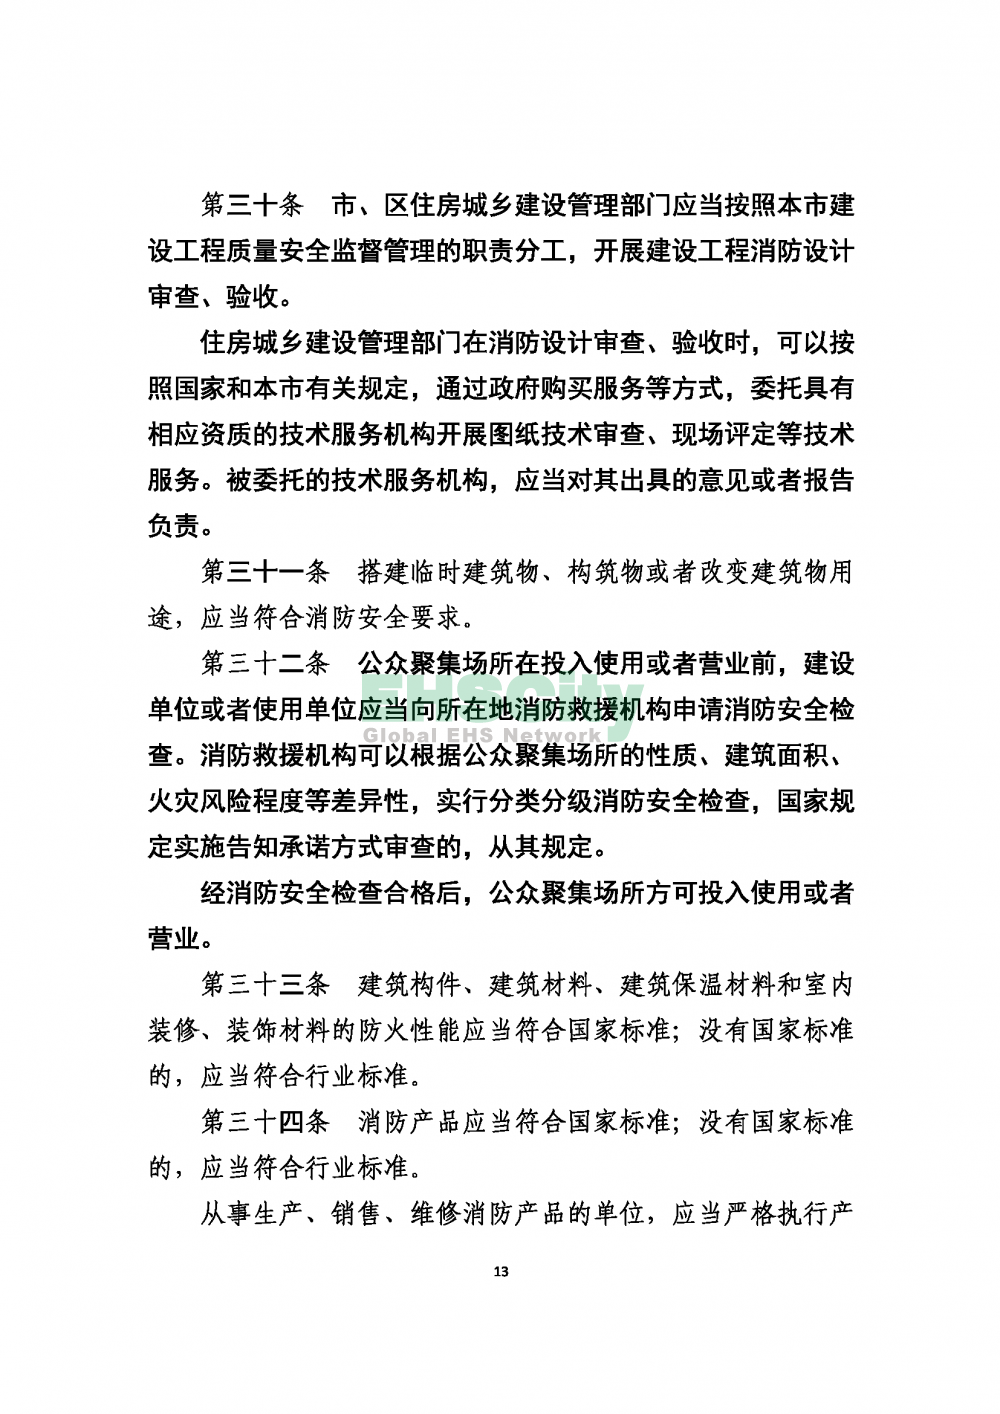 2020版上海消防条例_页面_13